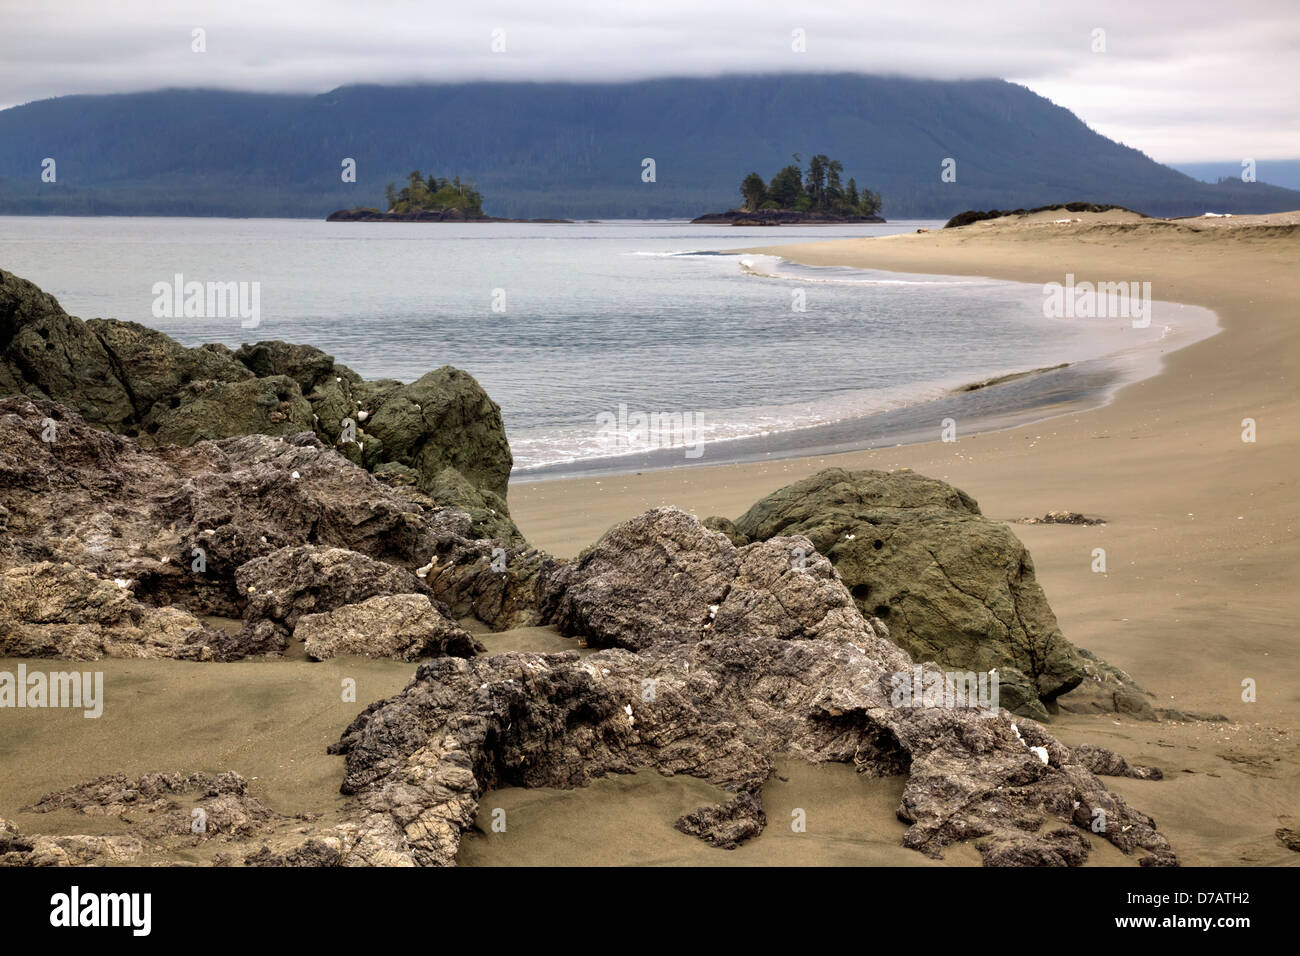 Whaler îlot avec vue vers l'île de Flores, l'île de Vancouver, British Columbia Canada Banque D'Images